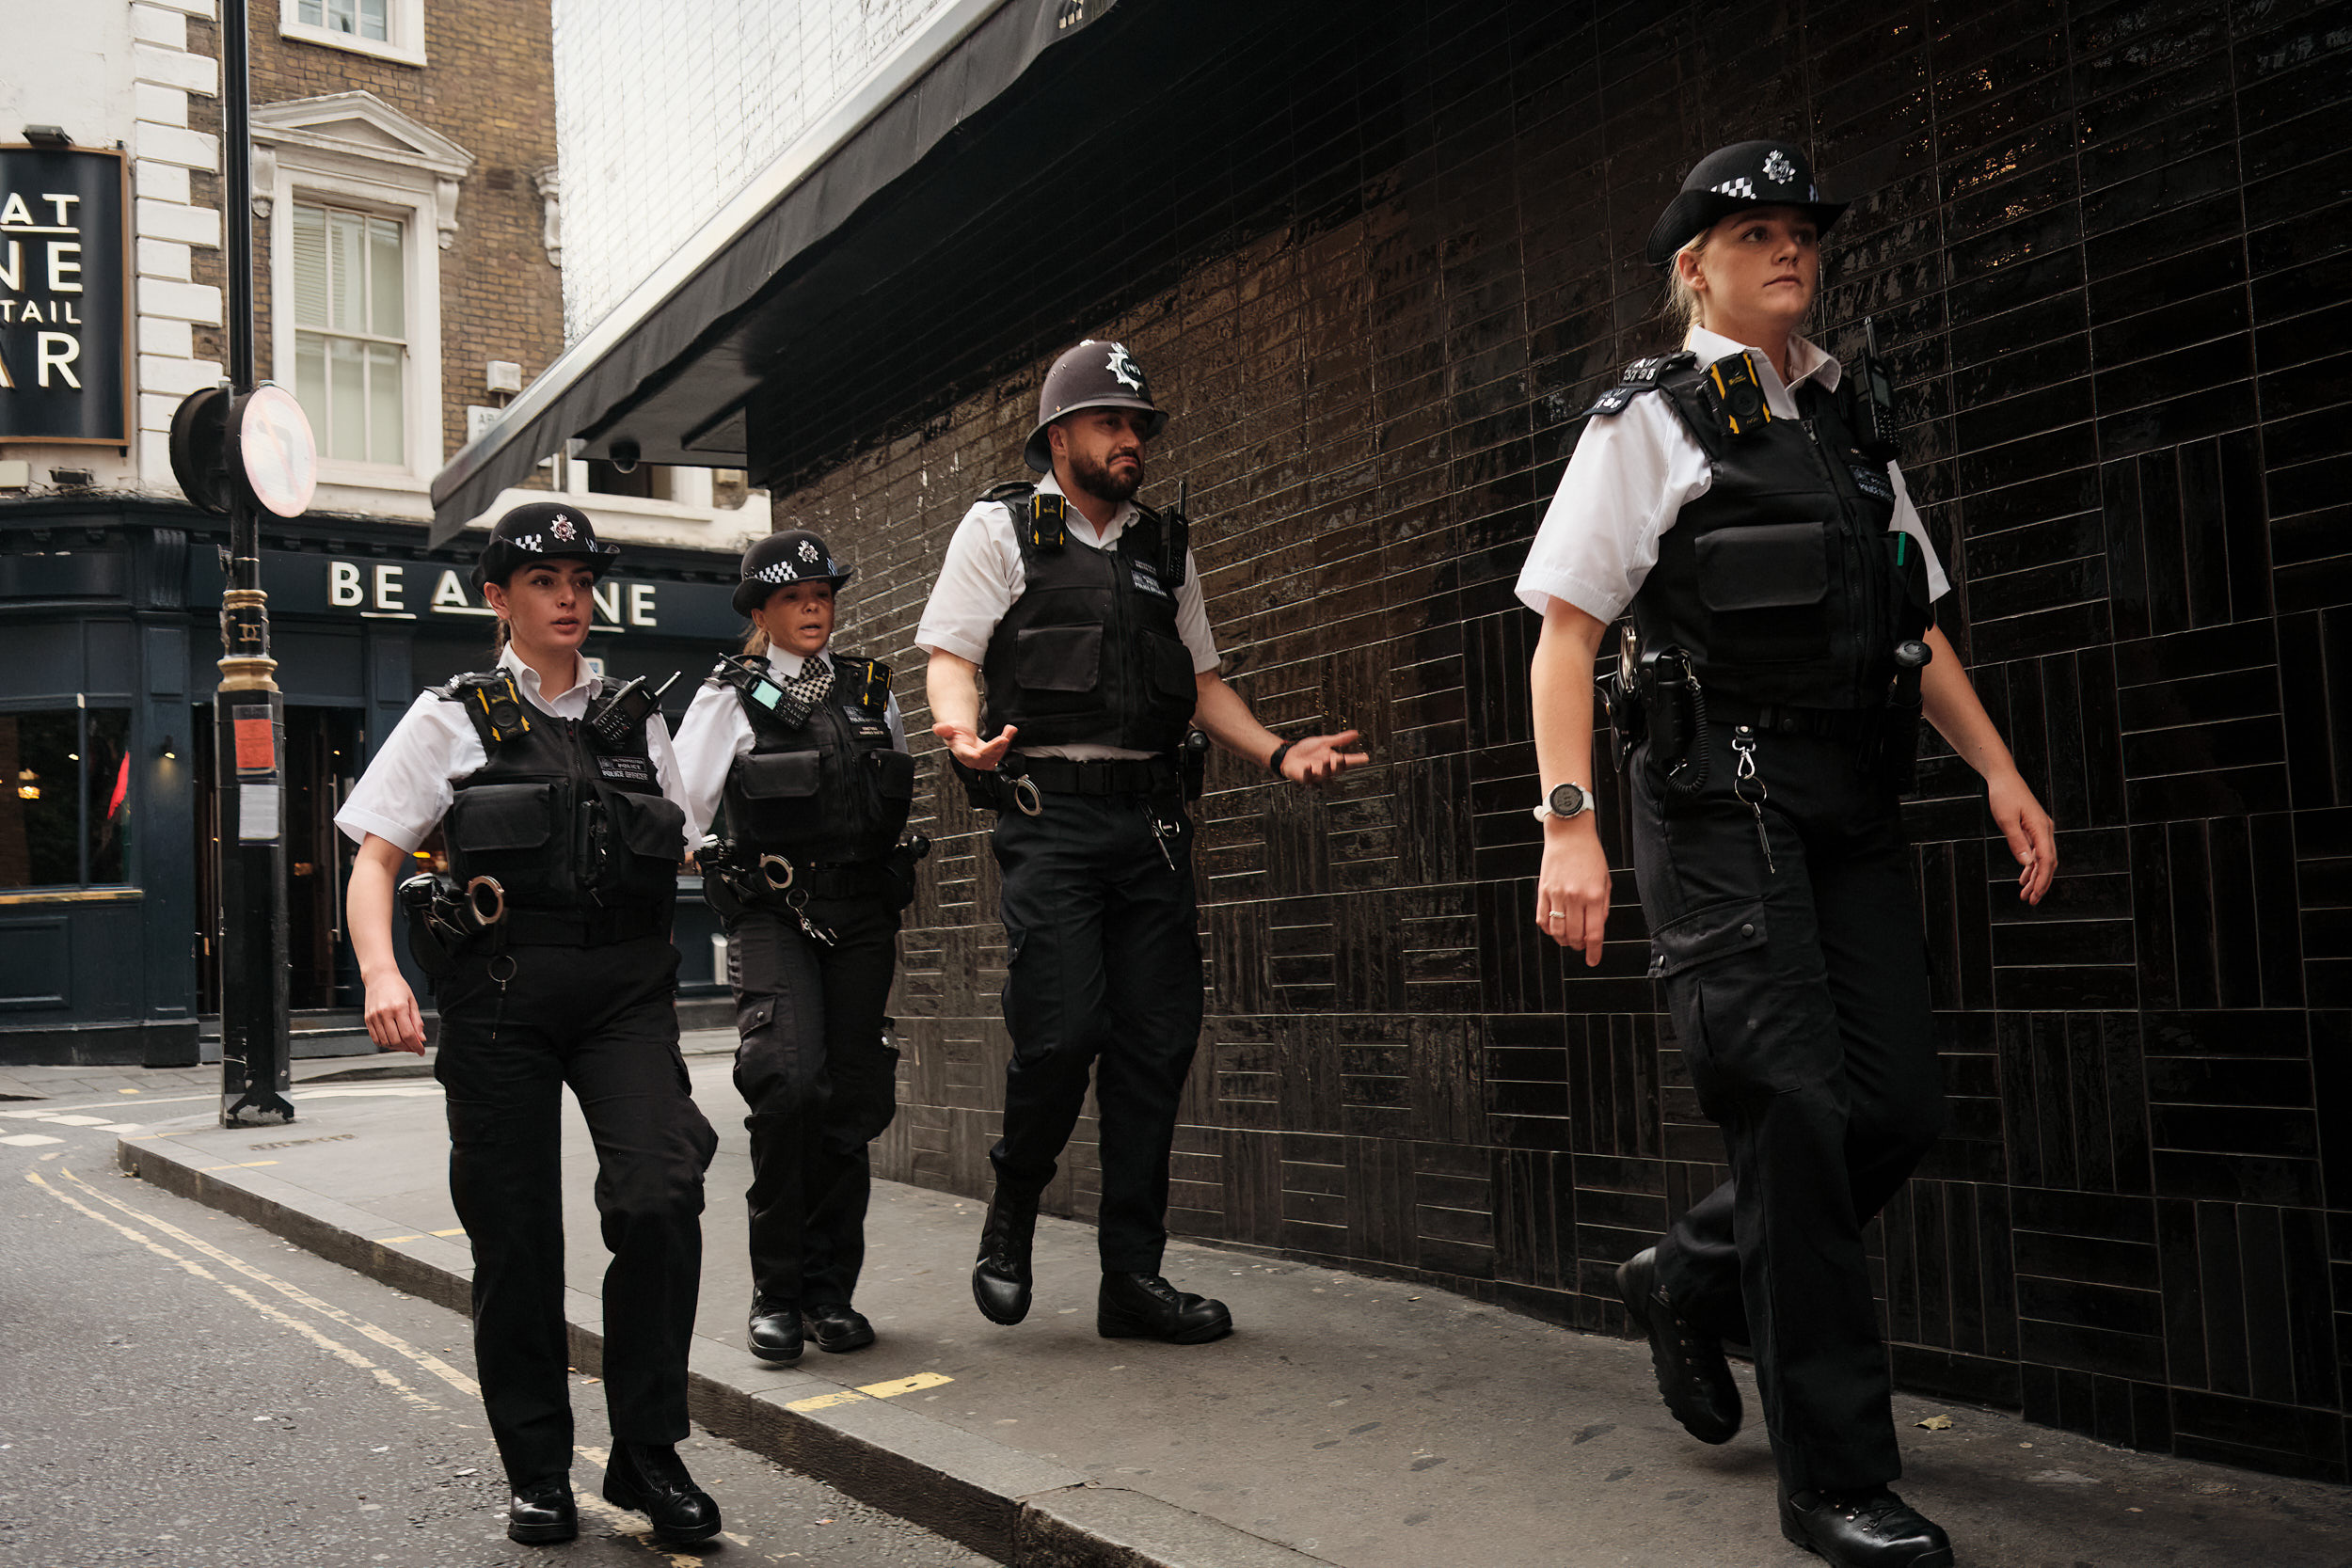 COPS IN SOHO LONDON